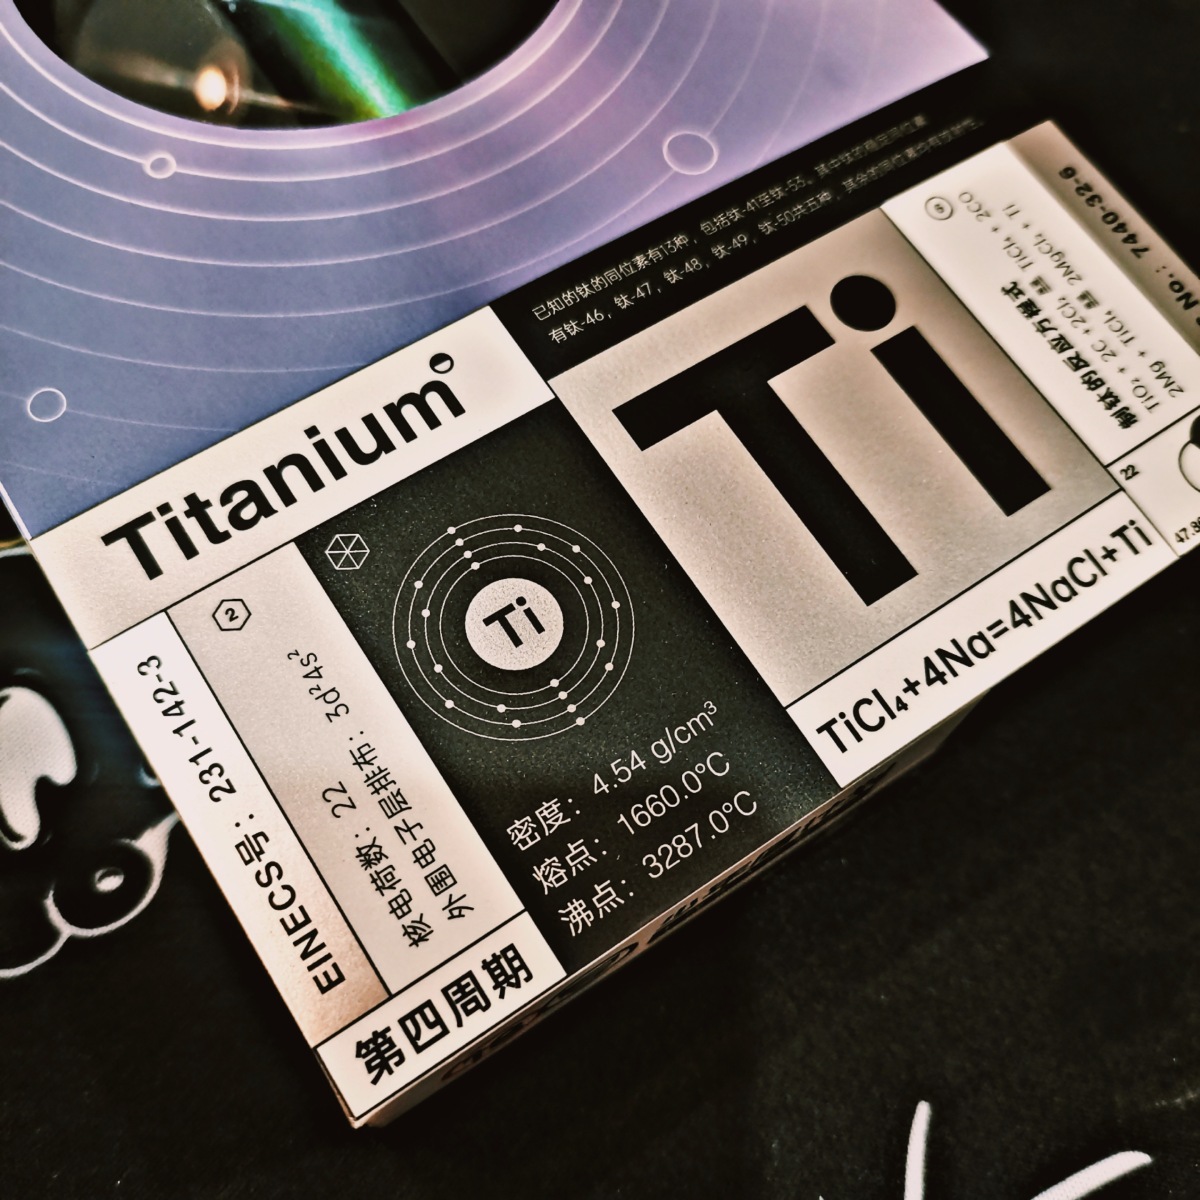 MOTI·C Titanium review